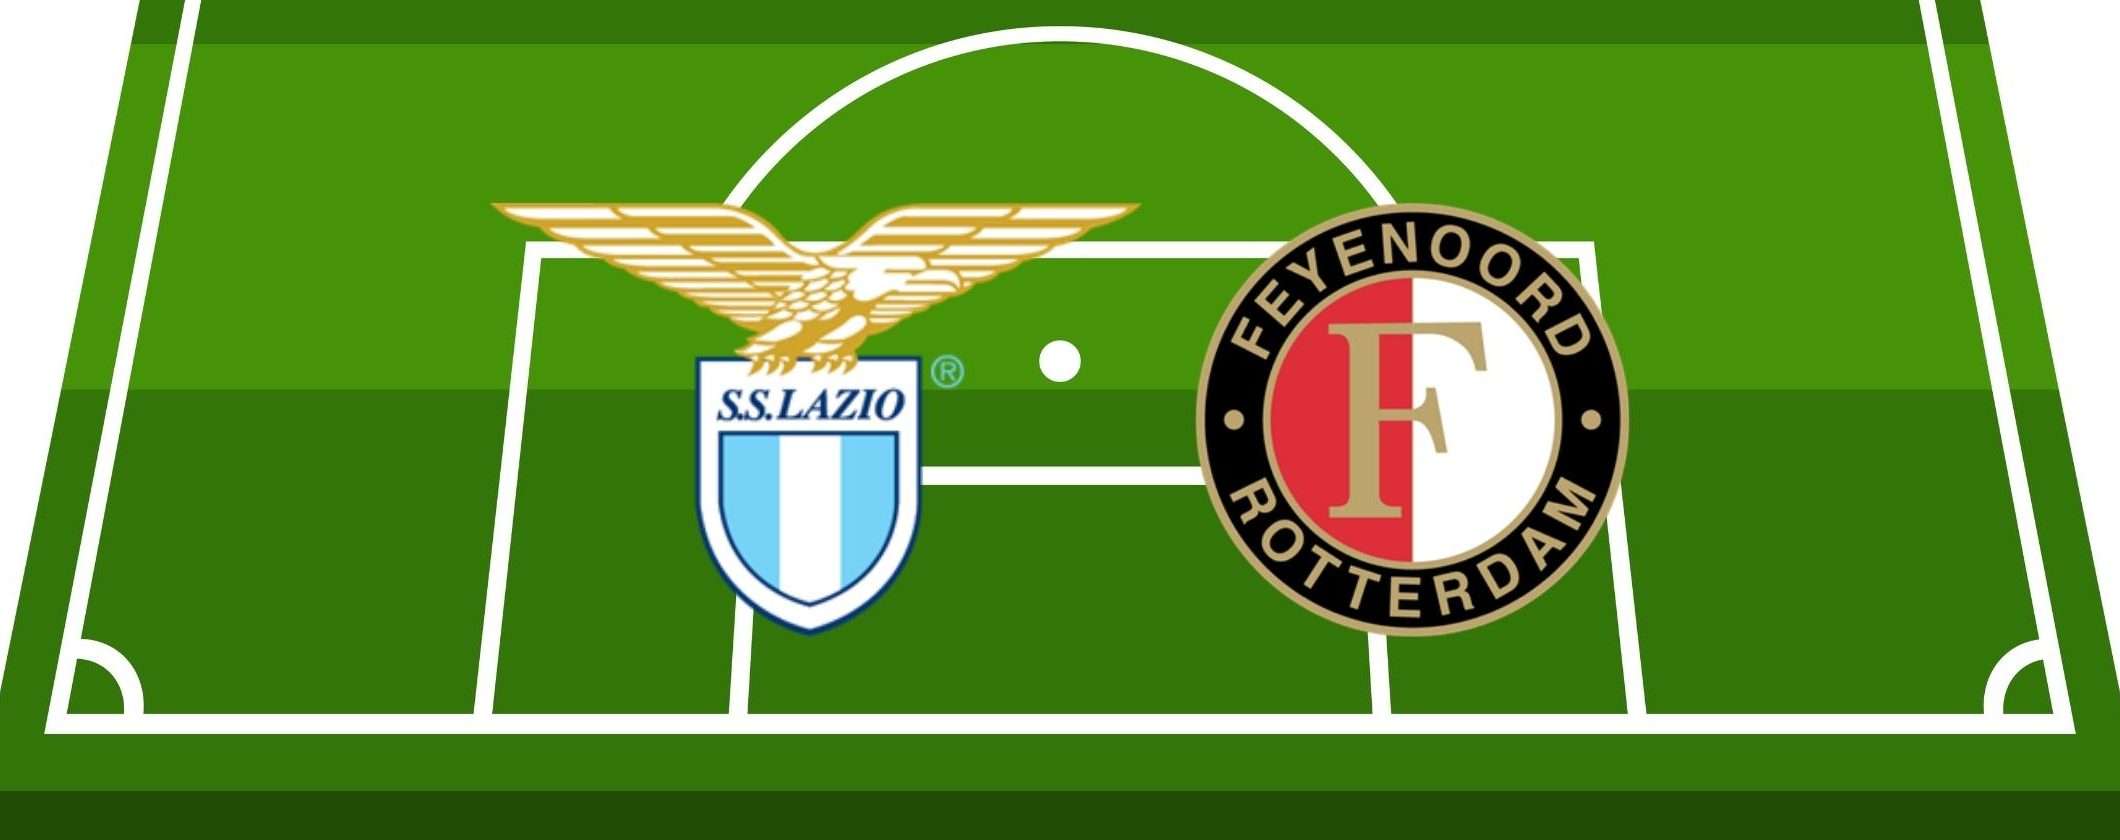 Come vedere Feyenoord-Lazio in streaming dall'estero senza restrizioni